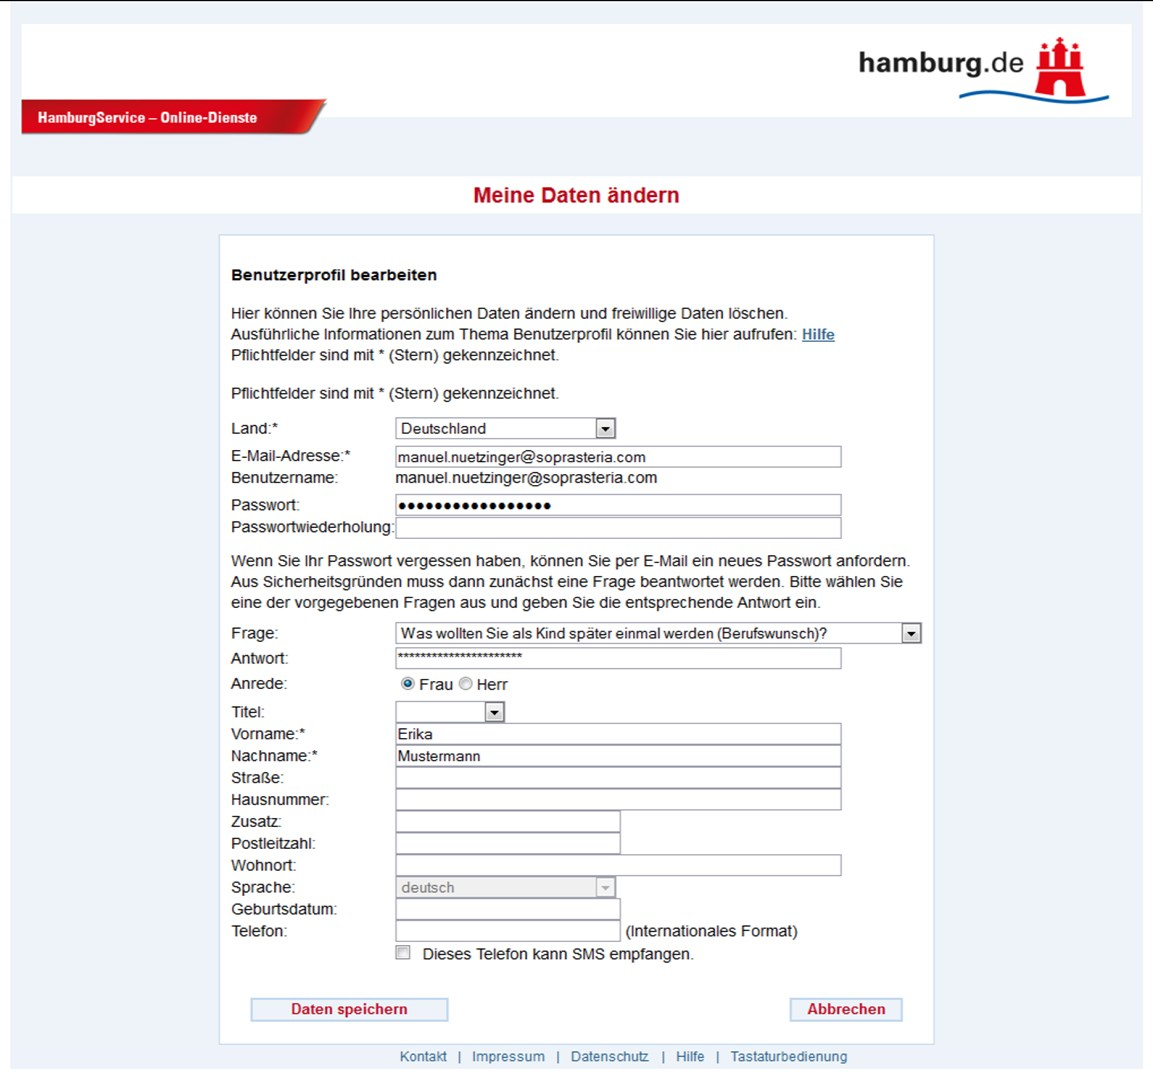 HamburgService ID-Management Hamburg Gateway Land E-Mail-Adresse Benutzername Passwort, Passwortfrage Anrede, Titel Vorname, Nachname Straße, Hausnr.